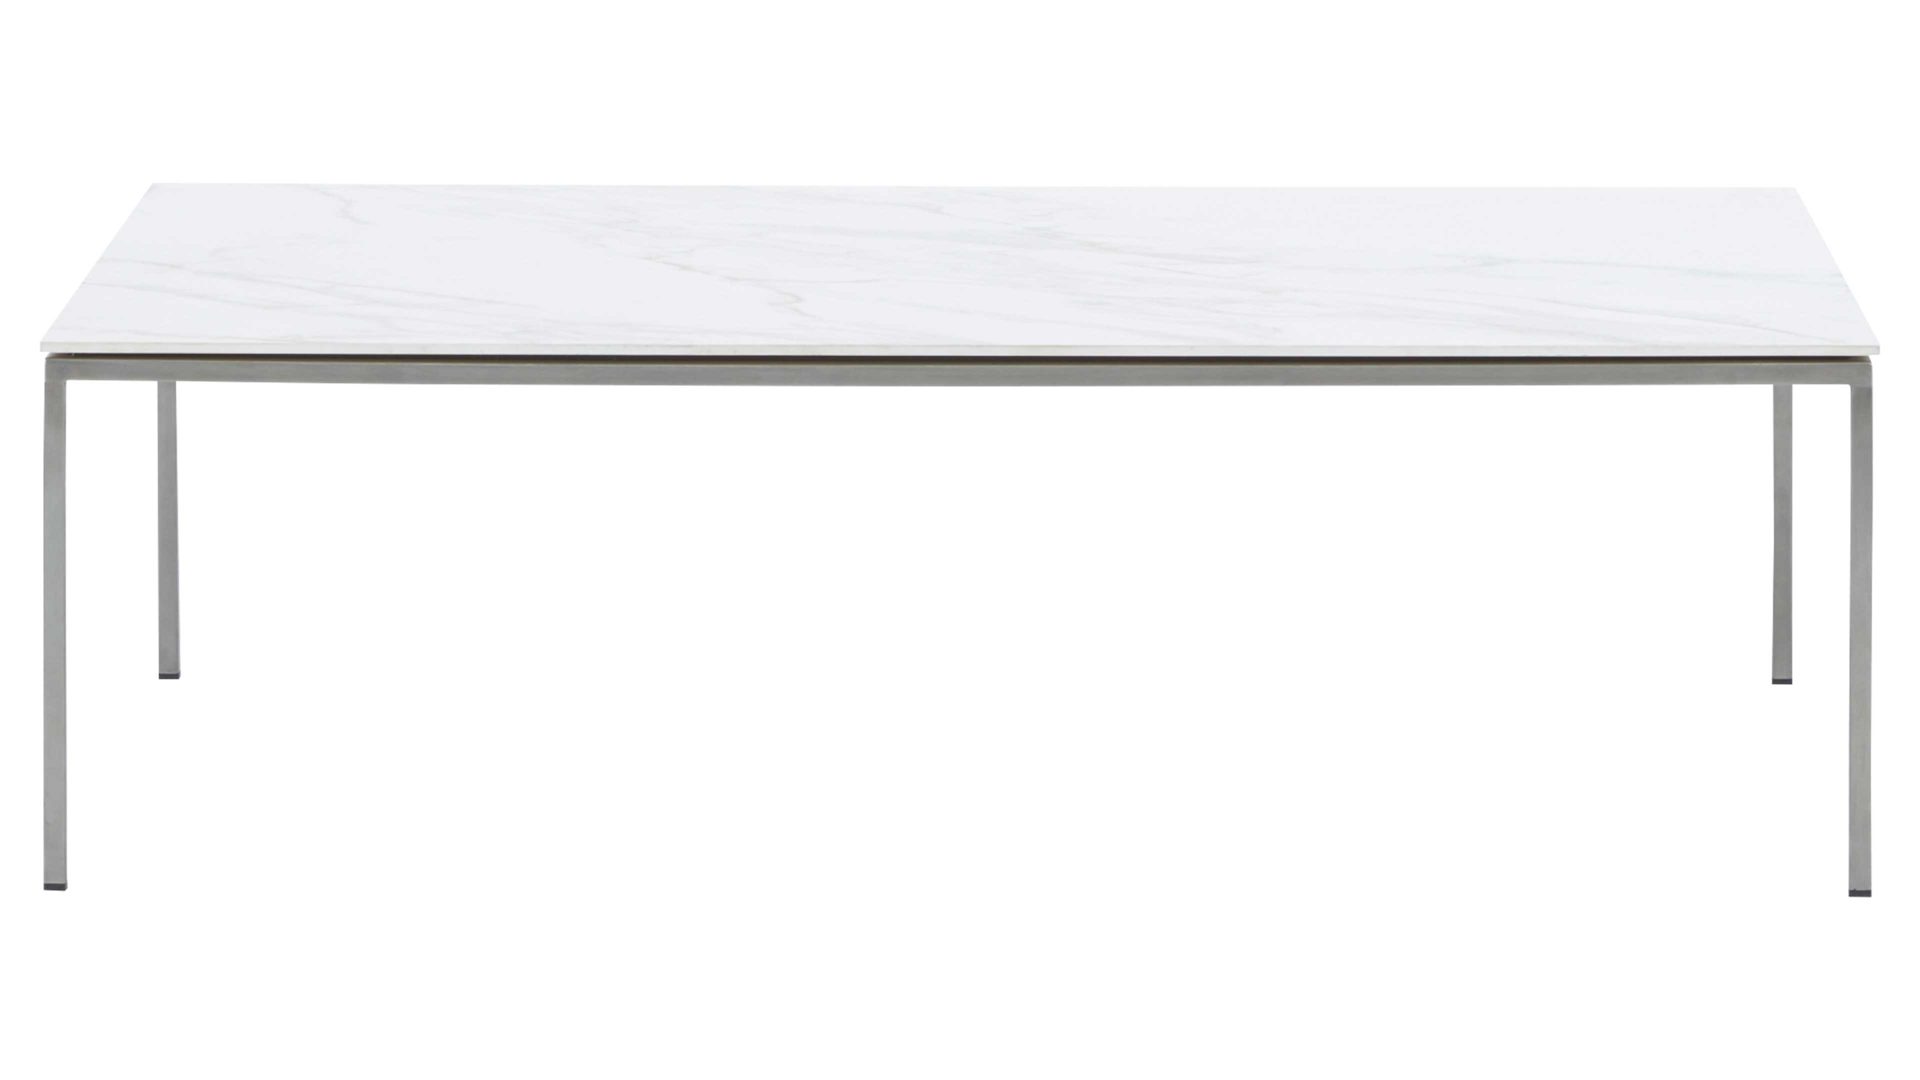 Couchtisch Interliving aus Keramik in Weiß Interliving Couchtisch Serie 6201 - Wohnzimmertisch ca. 115 x 42 x 70 cm - Carrara & Edelstahl